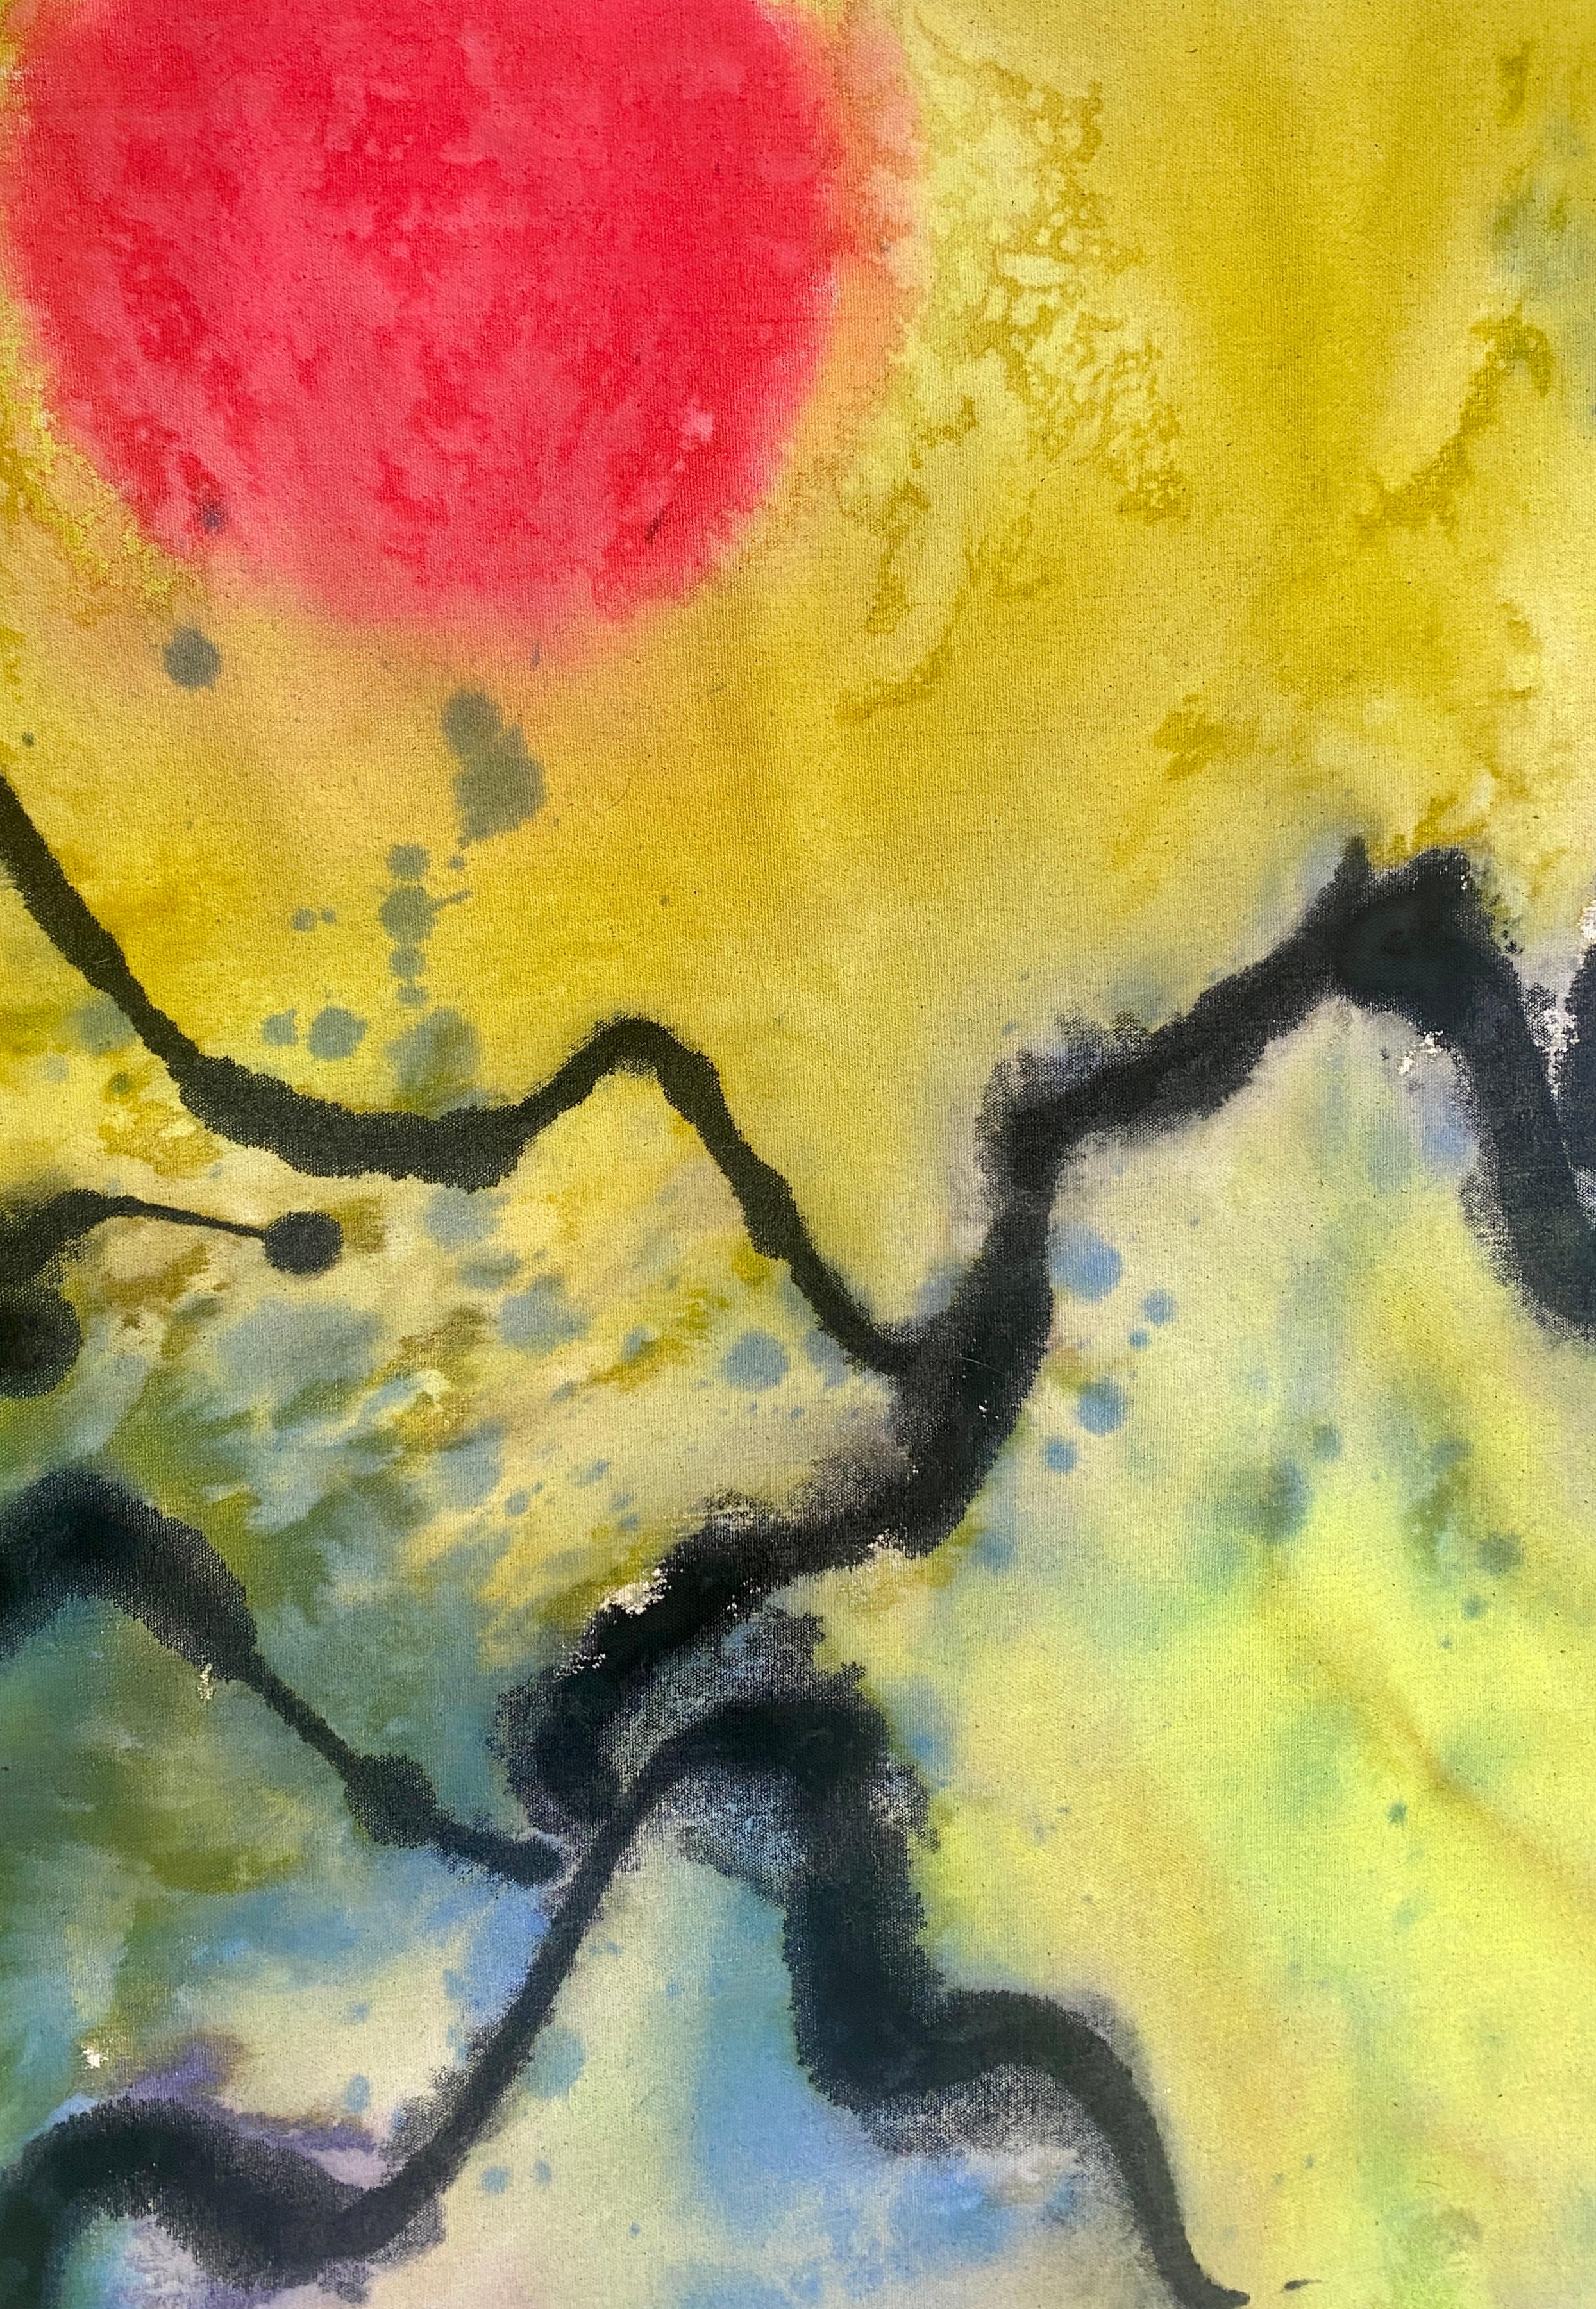 Eden – farbenfrohes abstraktes Landschaftsgemälde in Schmelzverfahren, Acryl auf roher Leinwand (Abstrakter Expressionismus), Painting, von Elisa Niva